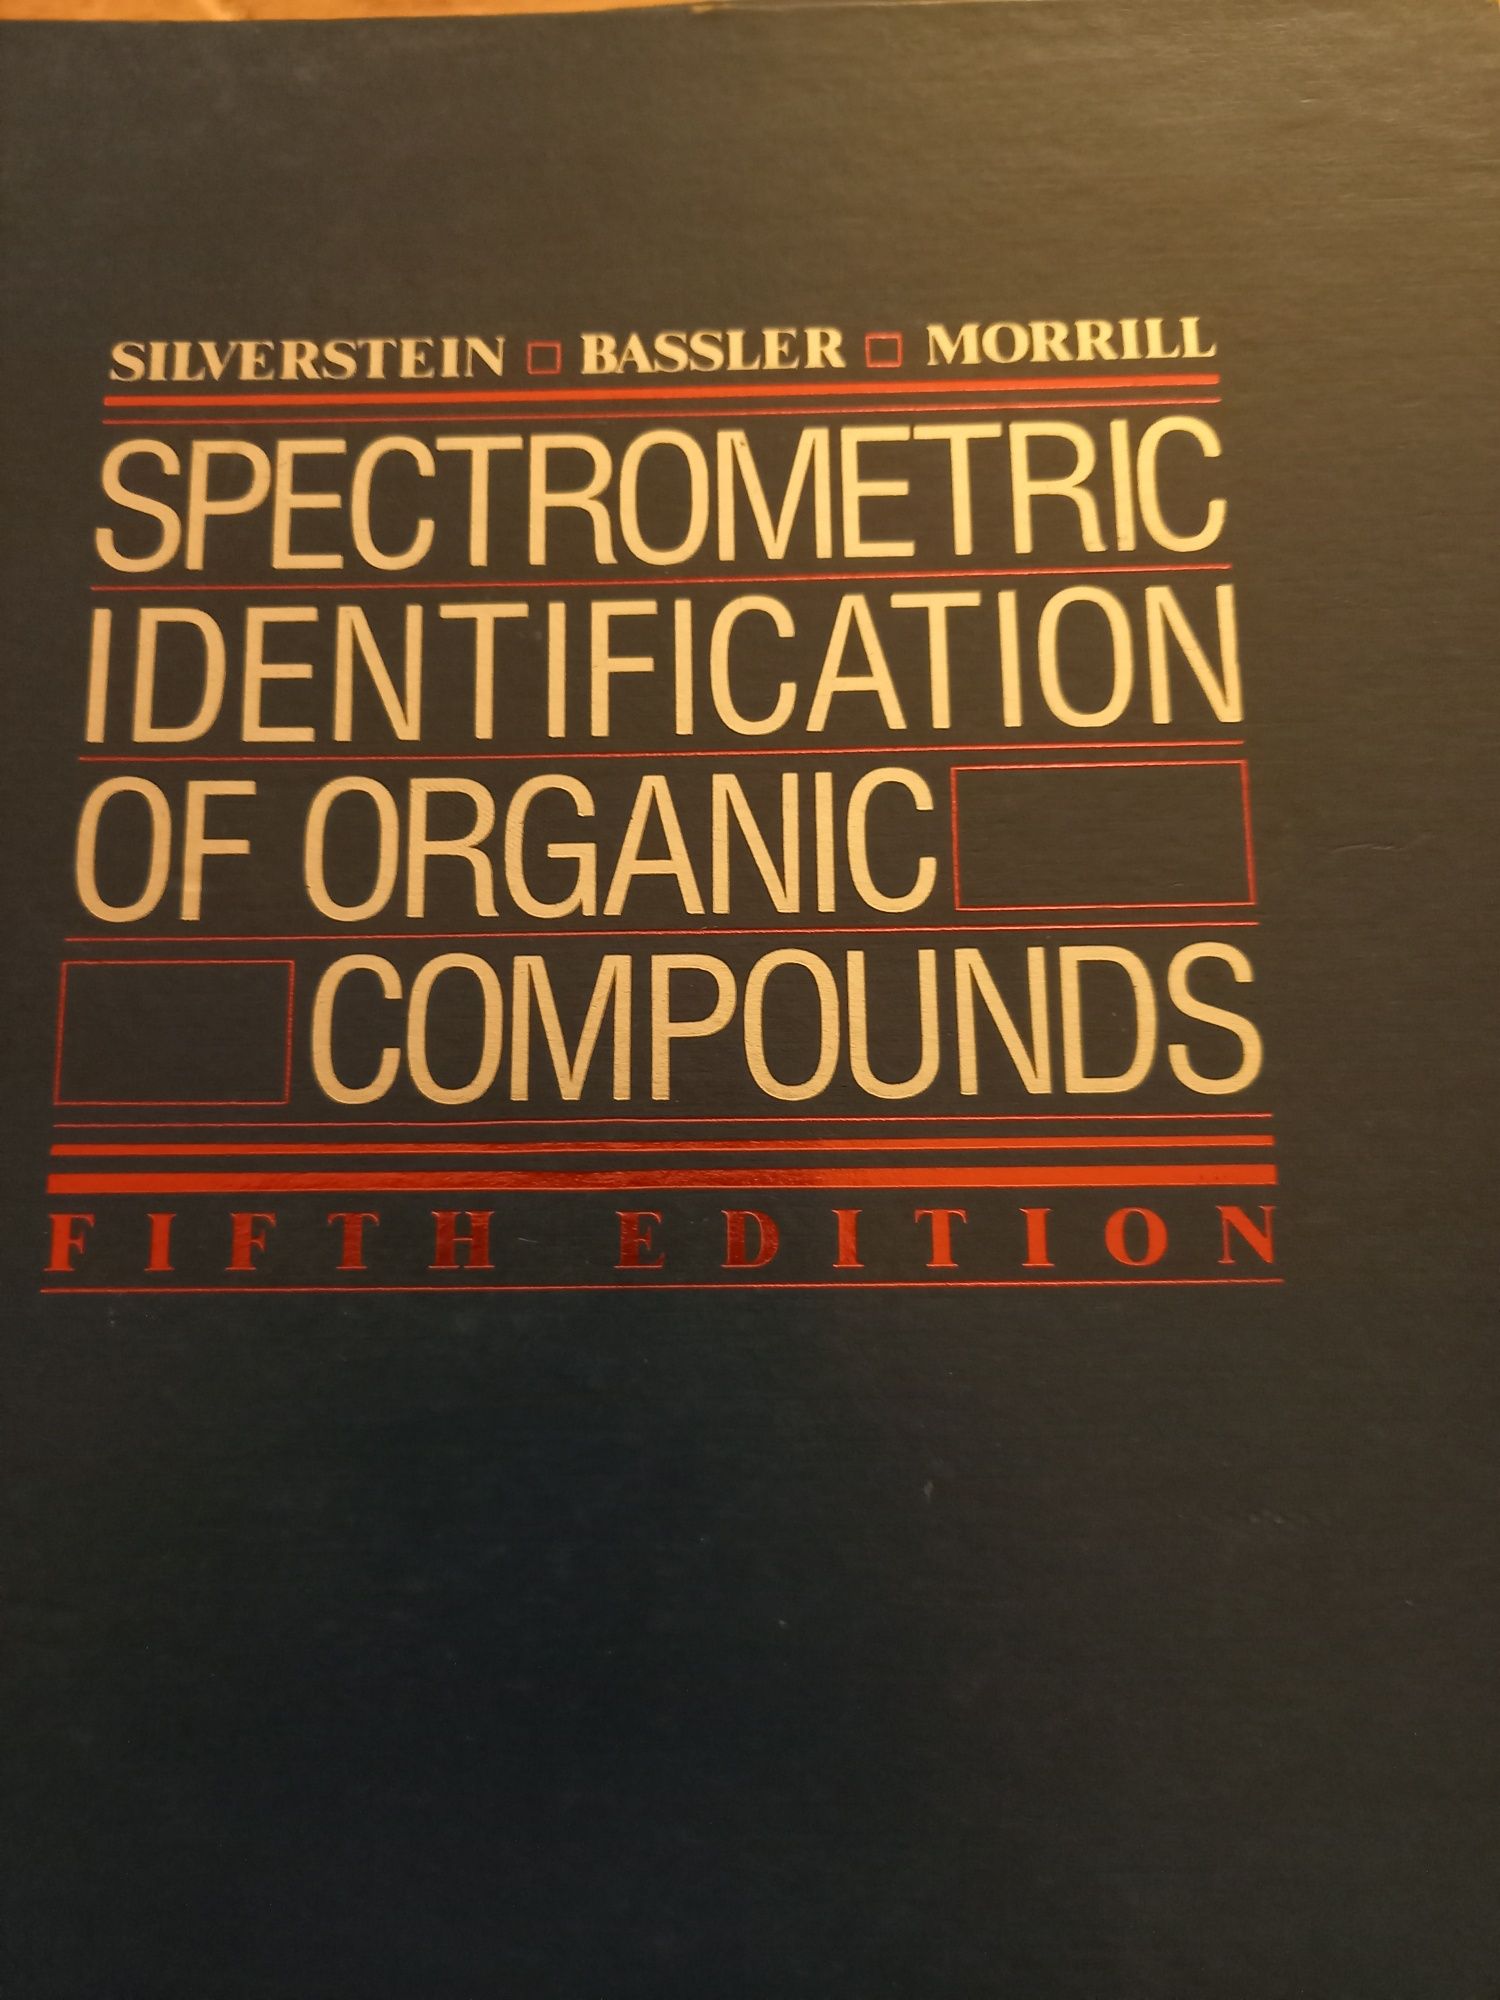 Livro Identificação espectrometrica de compostos orgânicos